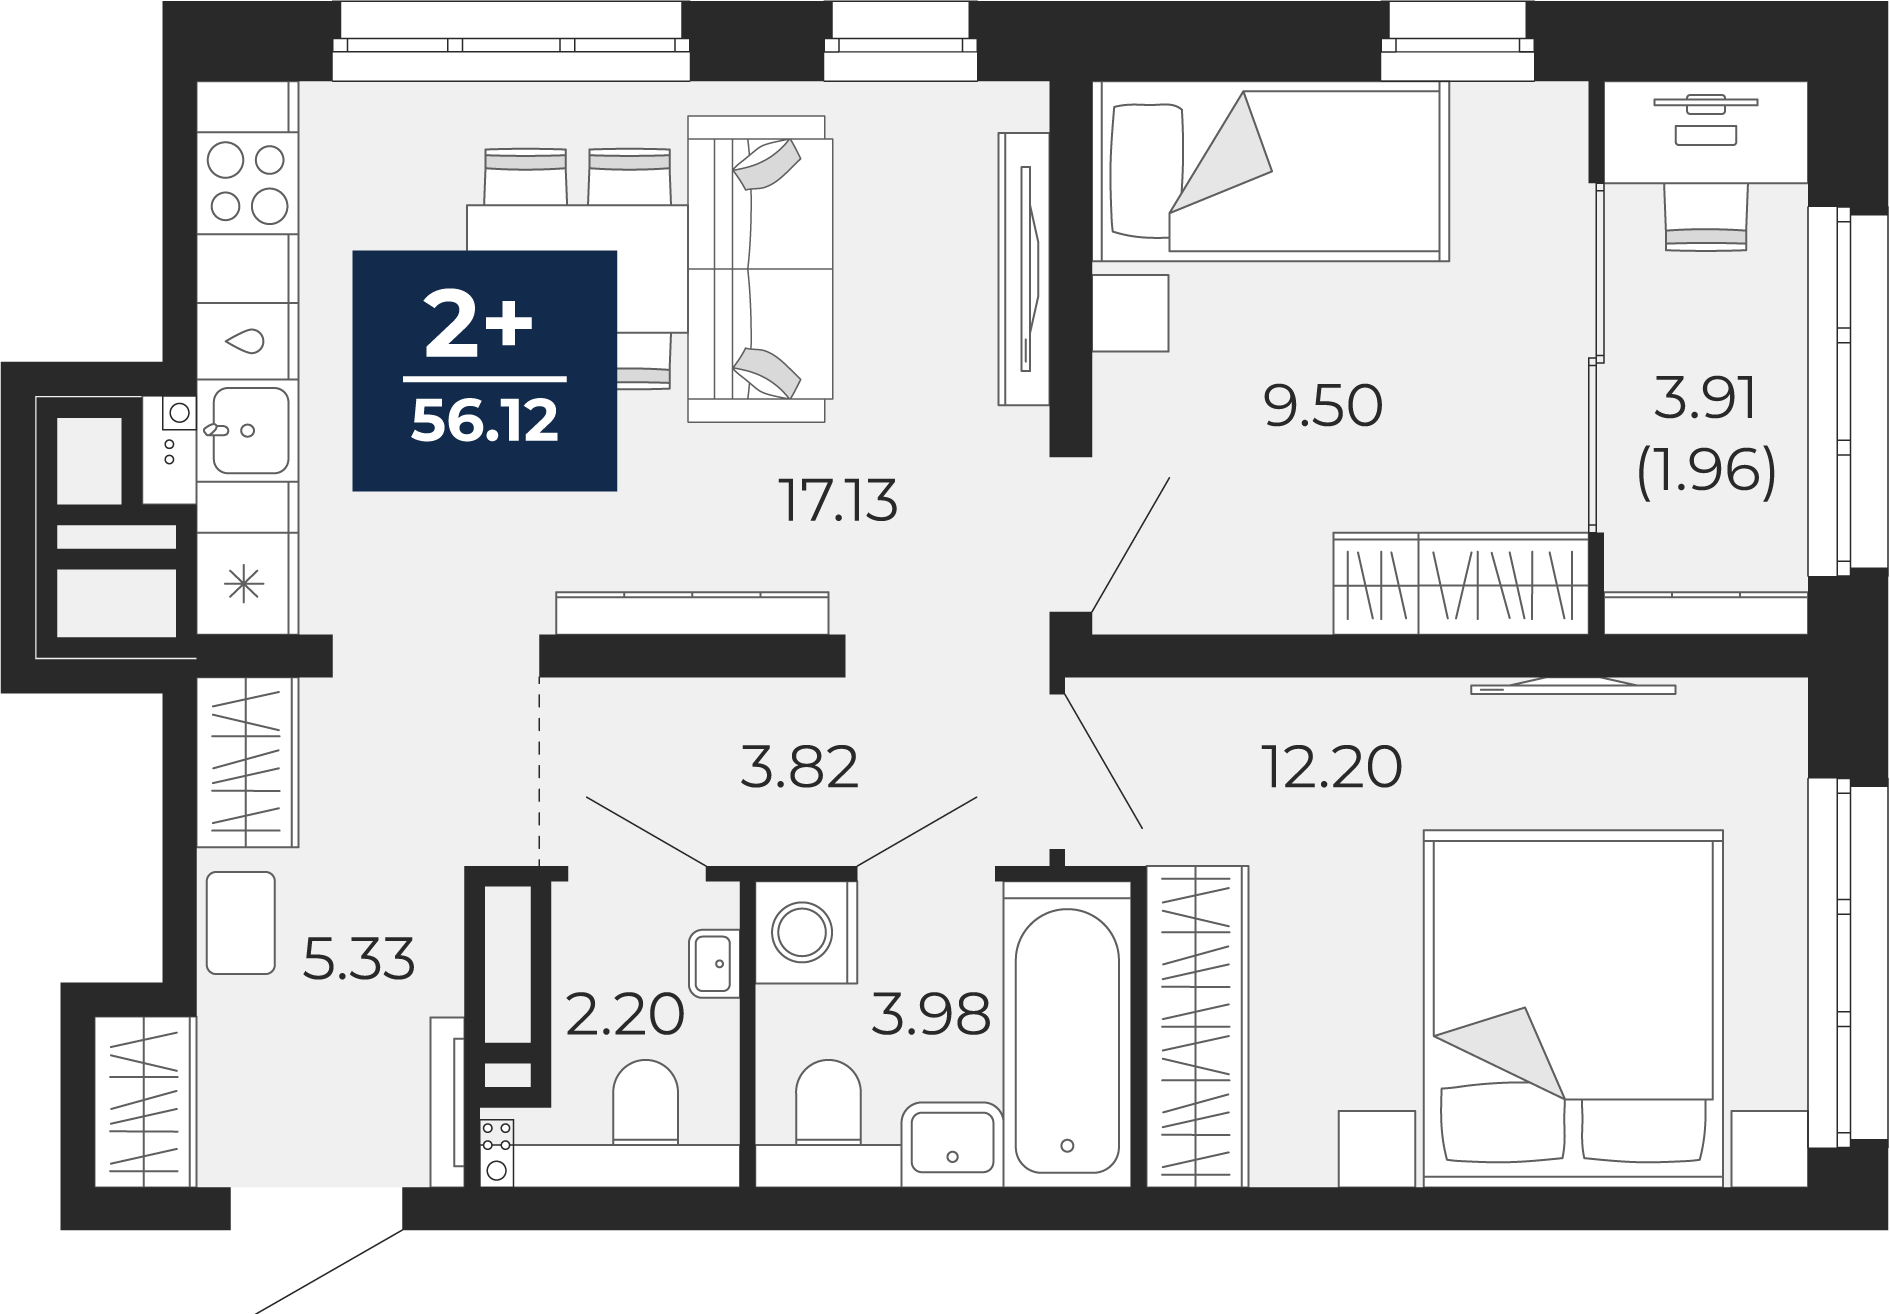 Квартира № 133, 2-комнатная, 56.12 кв. м, 11 этаж